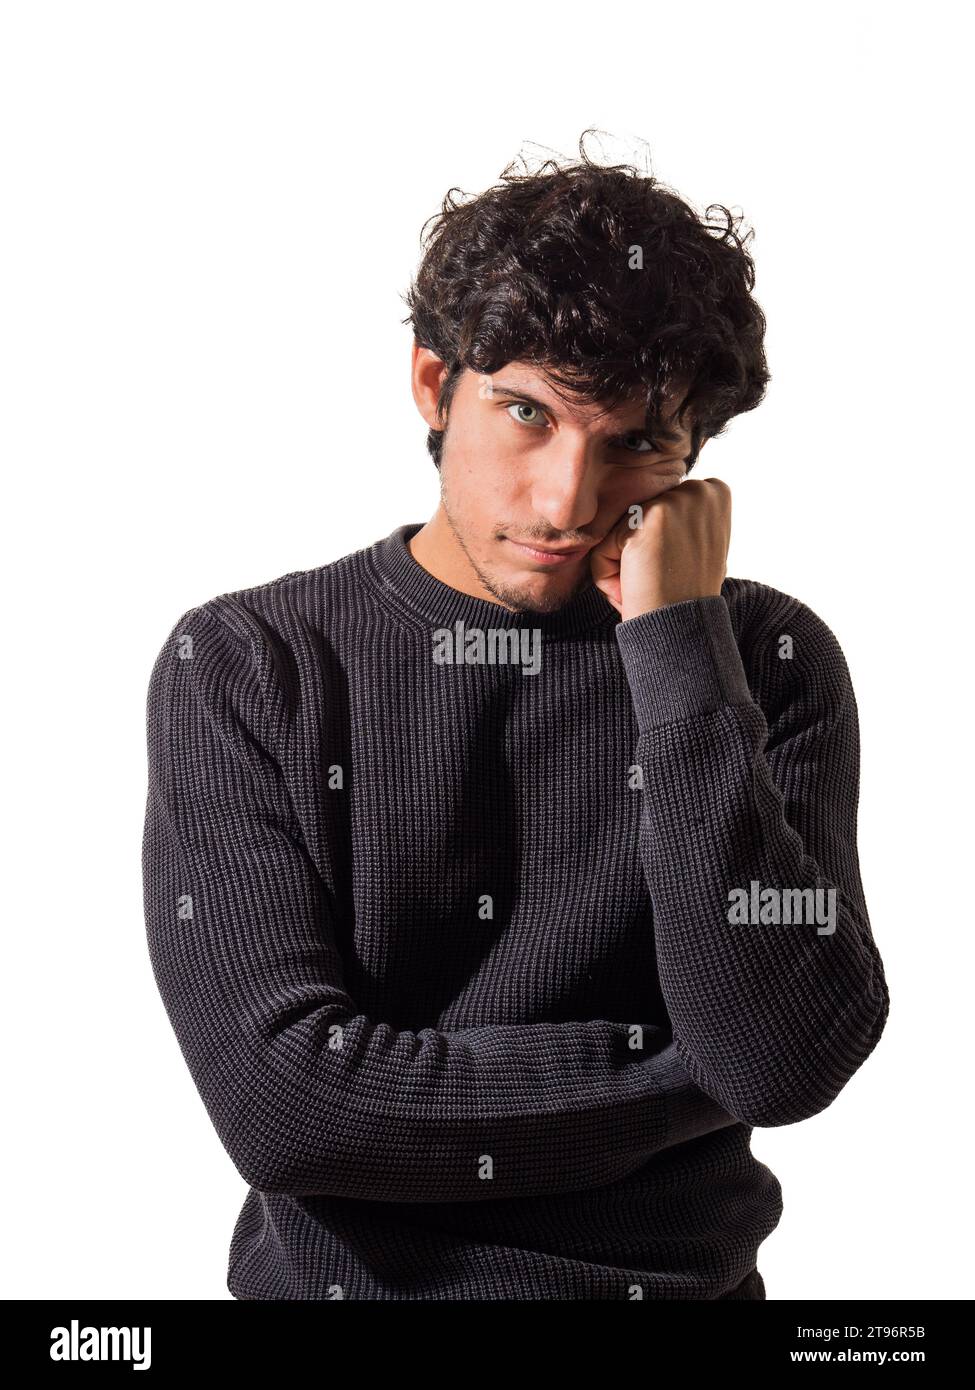 Ein Mann mit lockigen Haaren, der einen schwarzen Pullover trägt, denkt, enttäuscht oder traurig, im Studio, der in die Kamera schaut Stockfoto